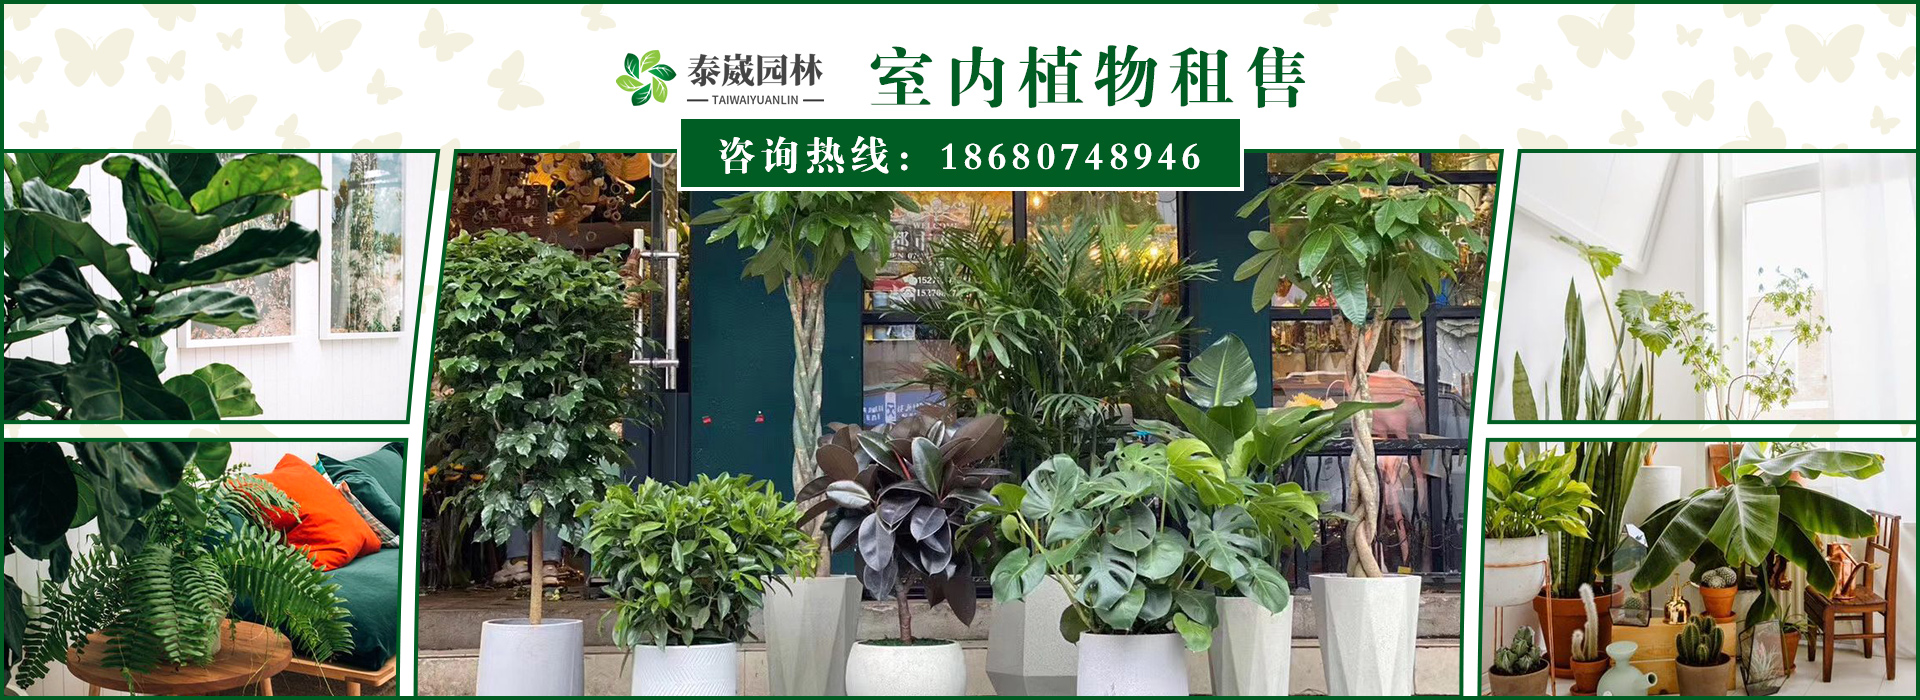 重庆泰崴园林绿化工程有限公司